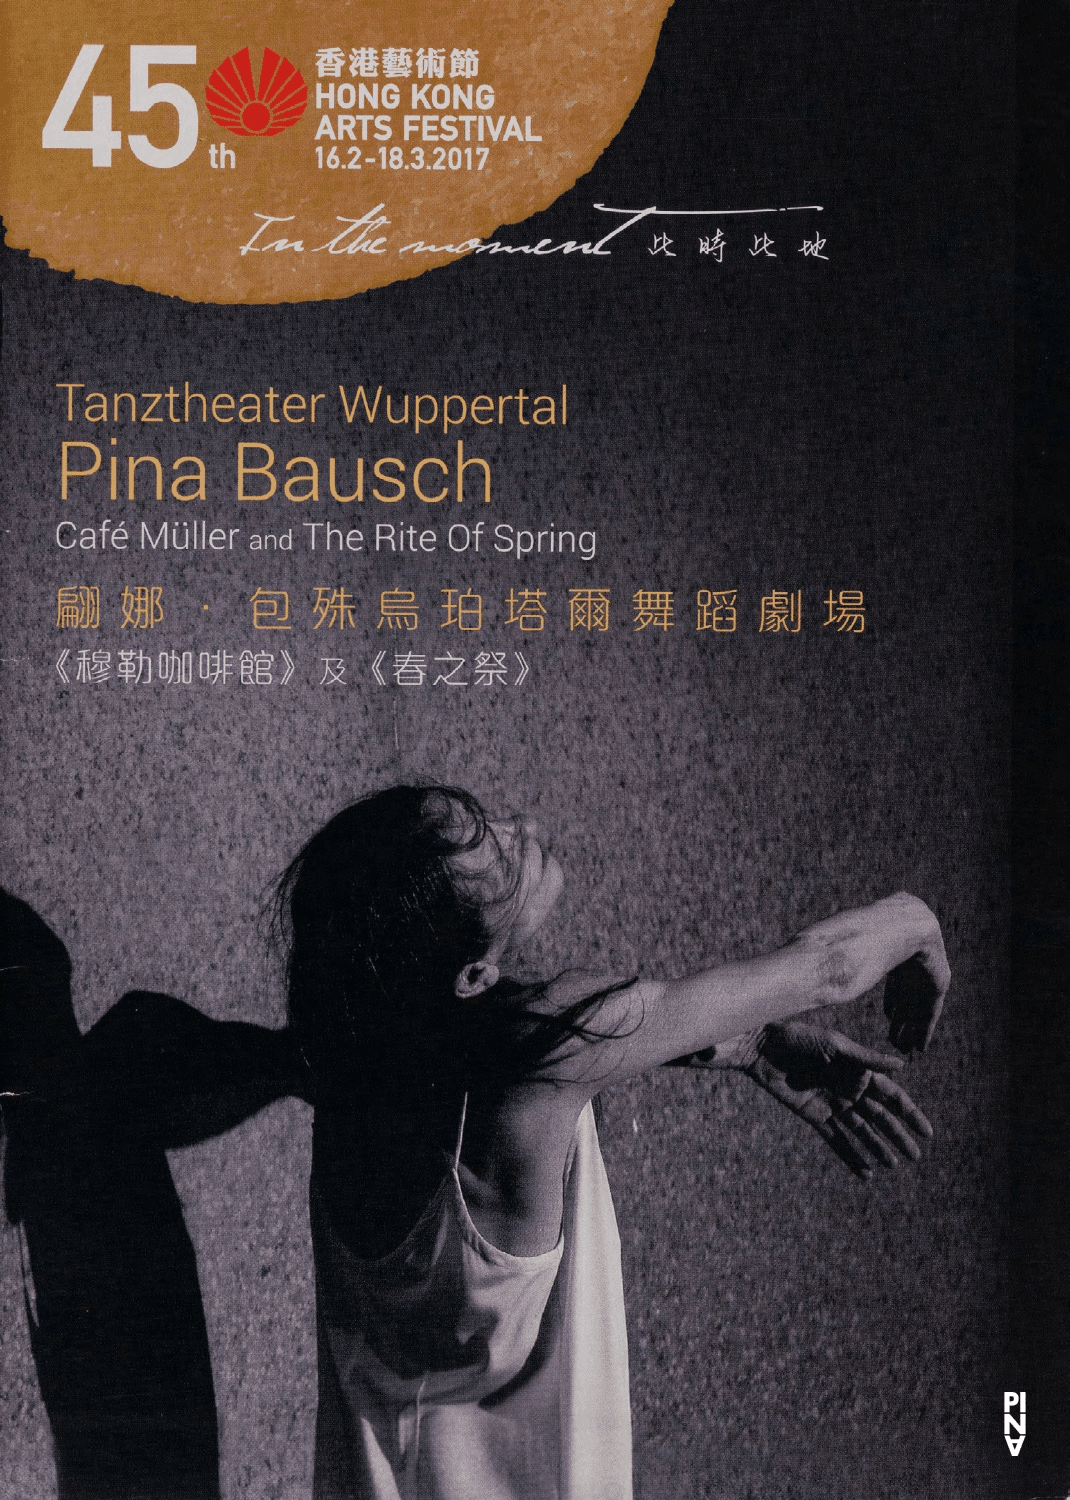 Programme pour « Café Müller » et « Le Sacre du printemps » de Pina Bausch avec Tanztheater Wuppertal à Hong Kong, 8 mars 2017 – 11 mars 2017